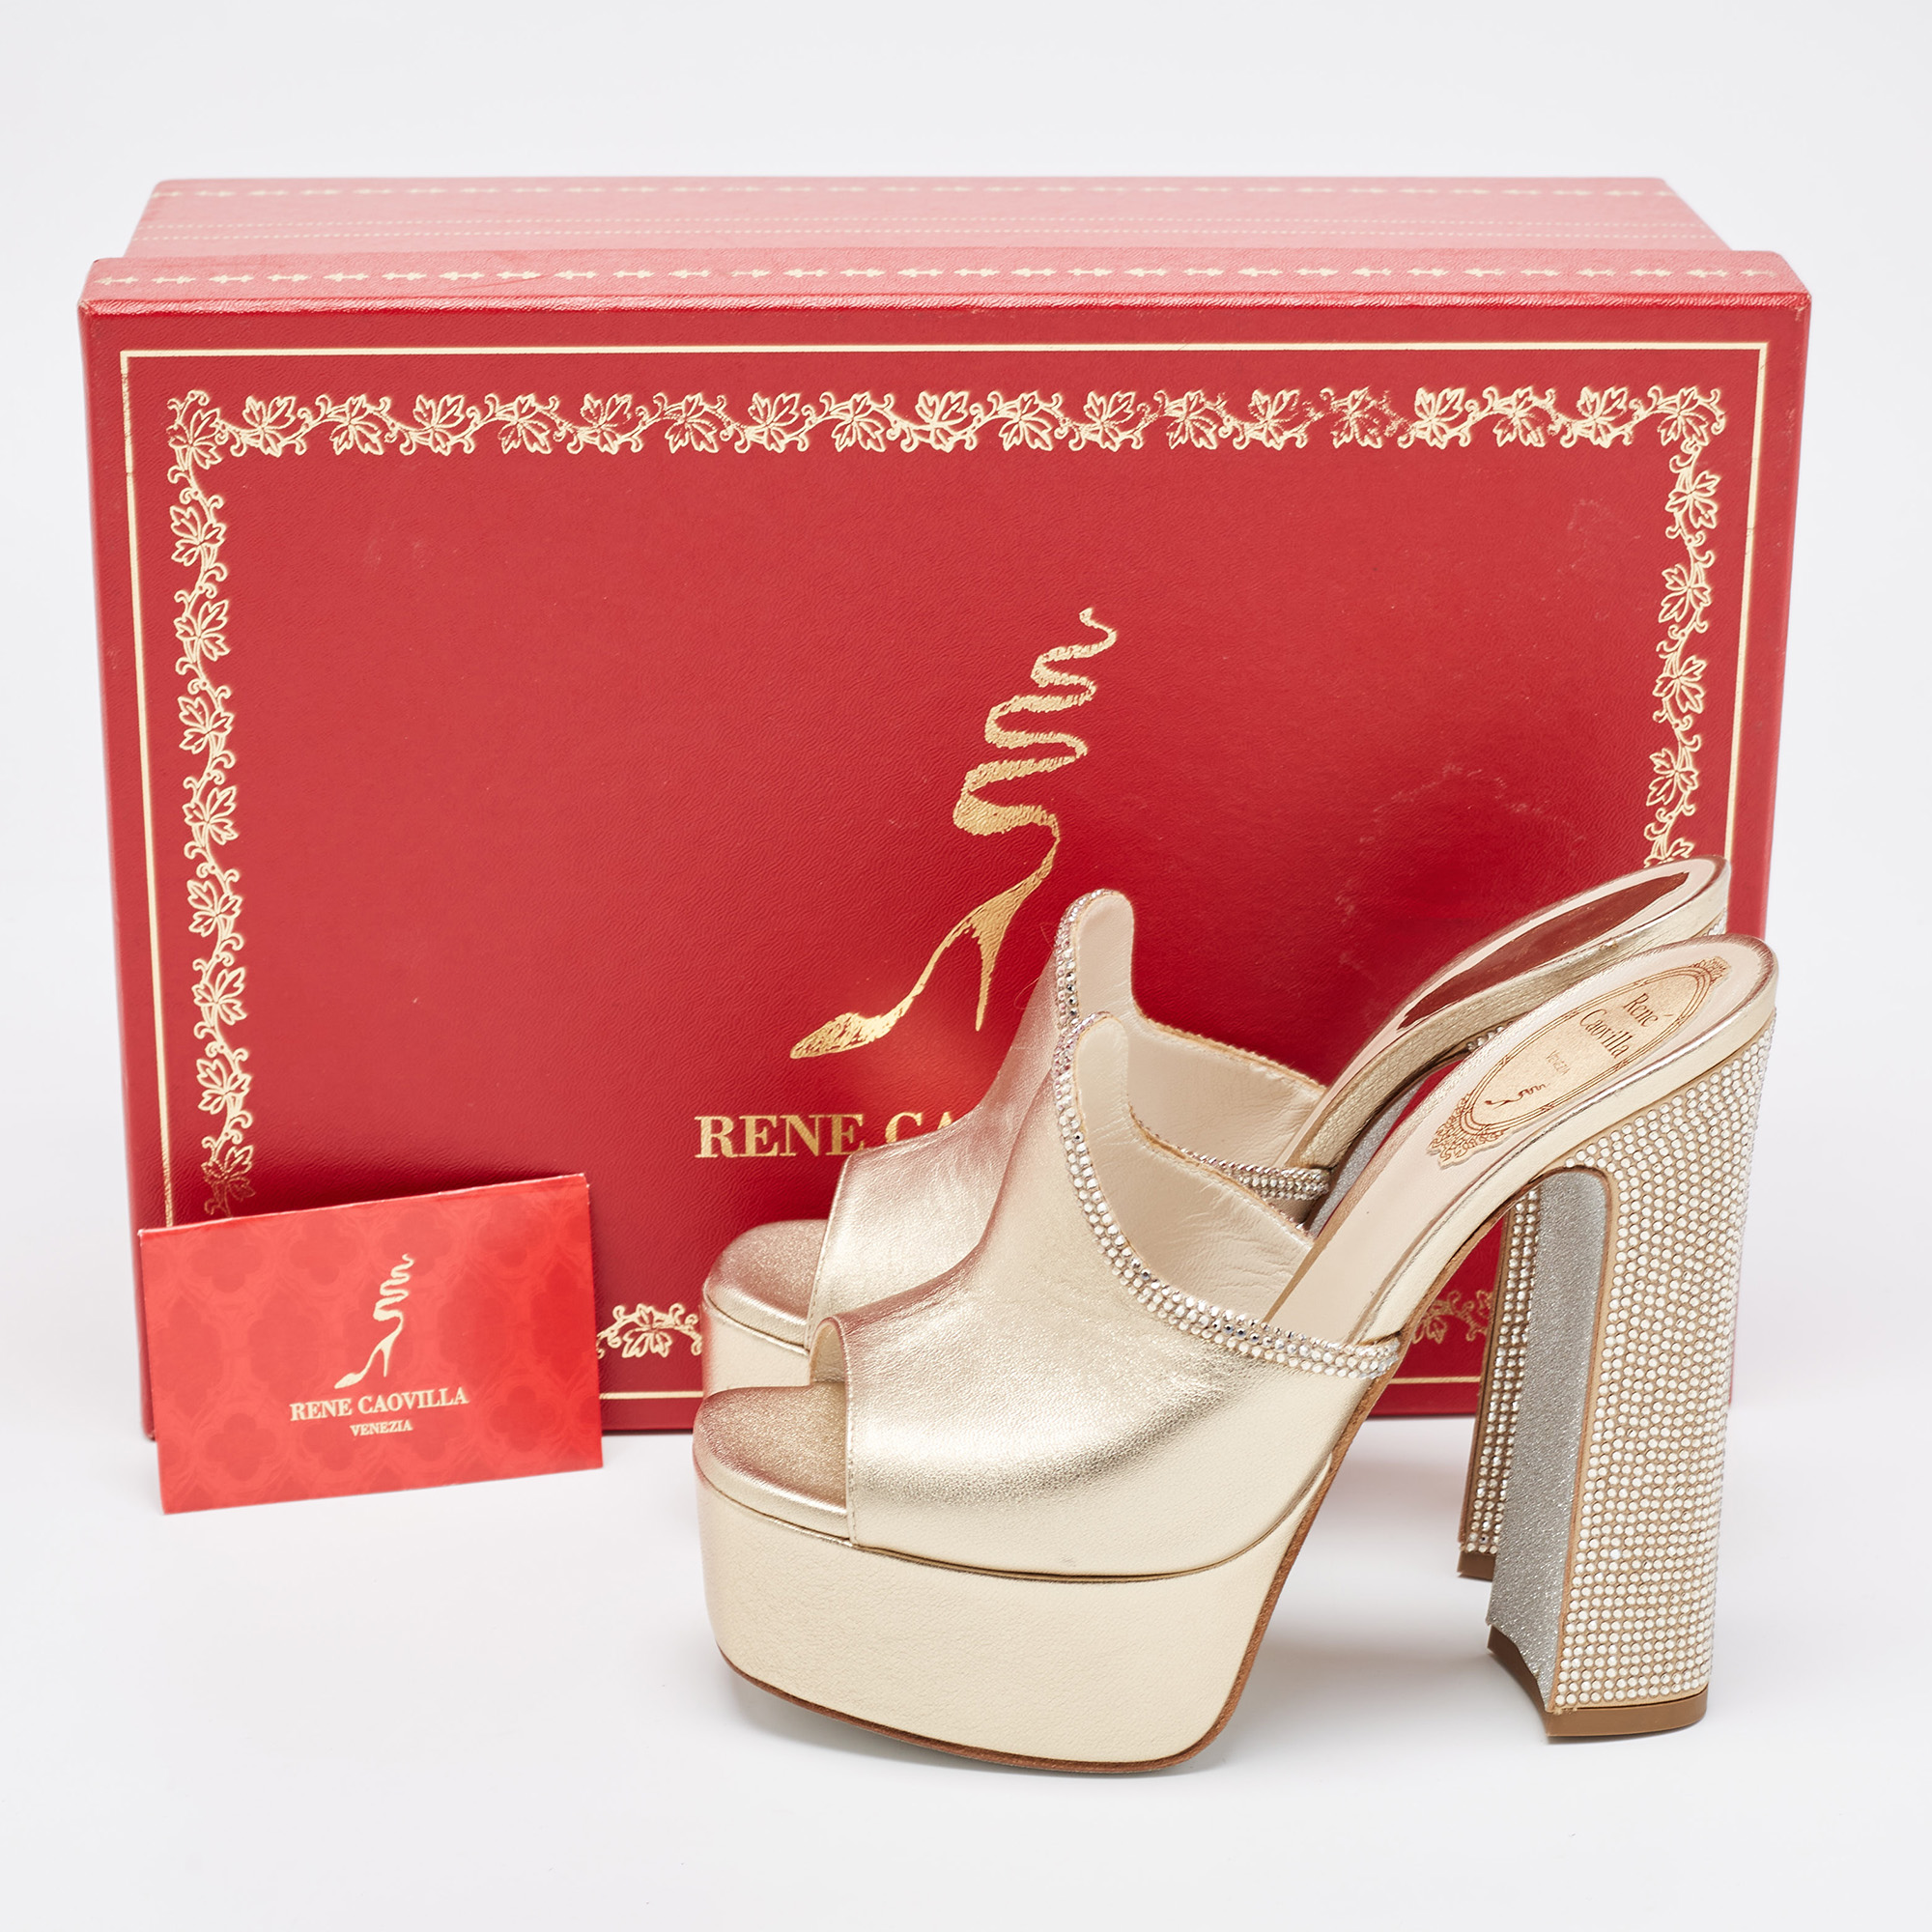 René Caovilla Metallic Gold Leather Crystal Embellished Slide Sandals Size 36